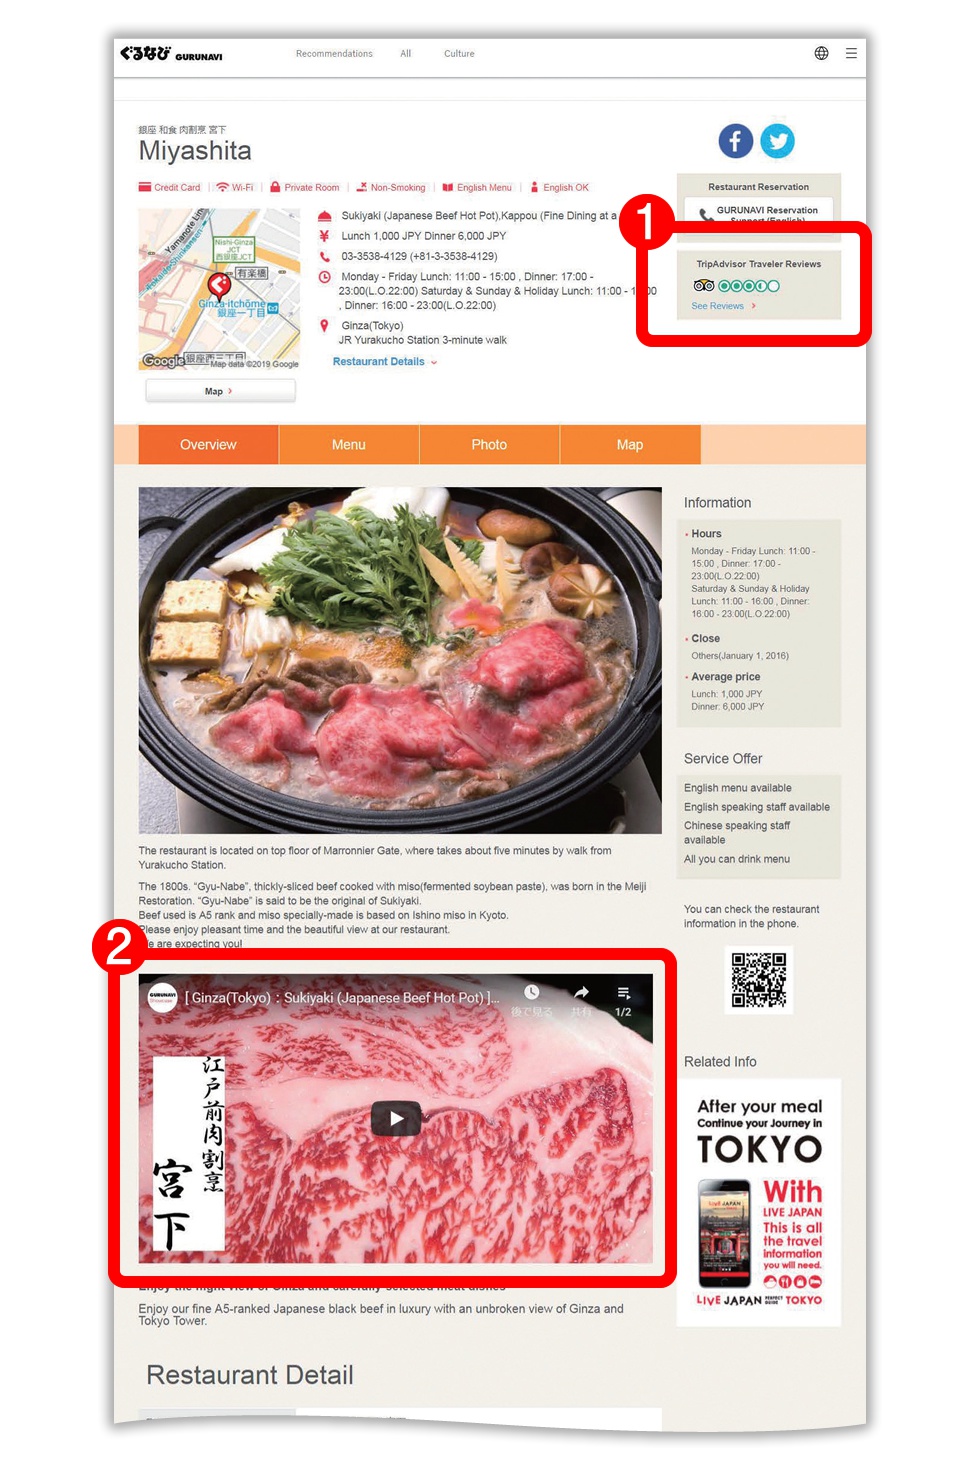 外国人客を意識したメニュー開発を行い「sukiyaki」のアピール強化で